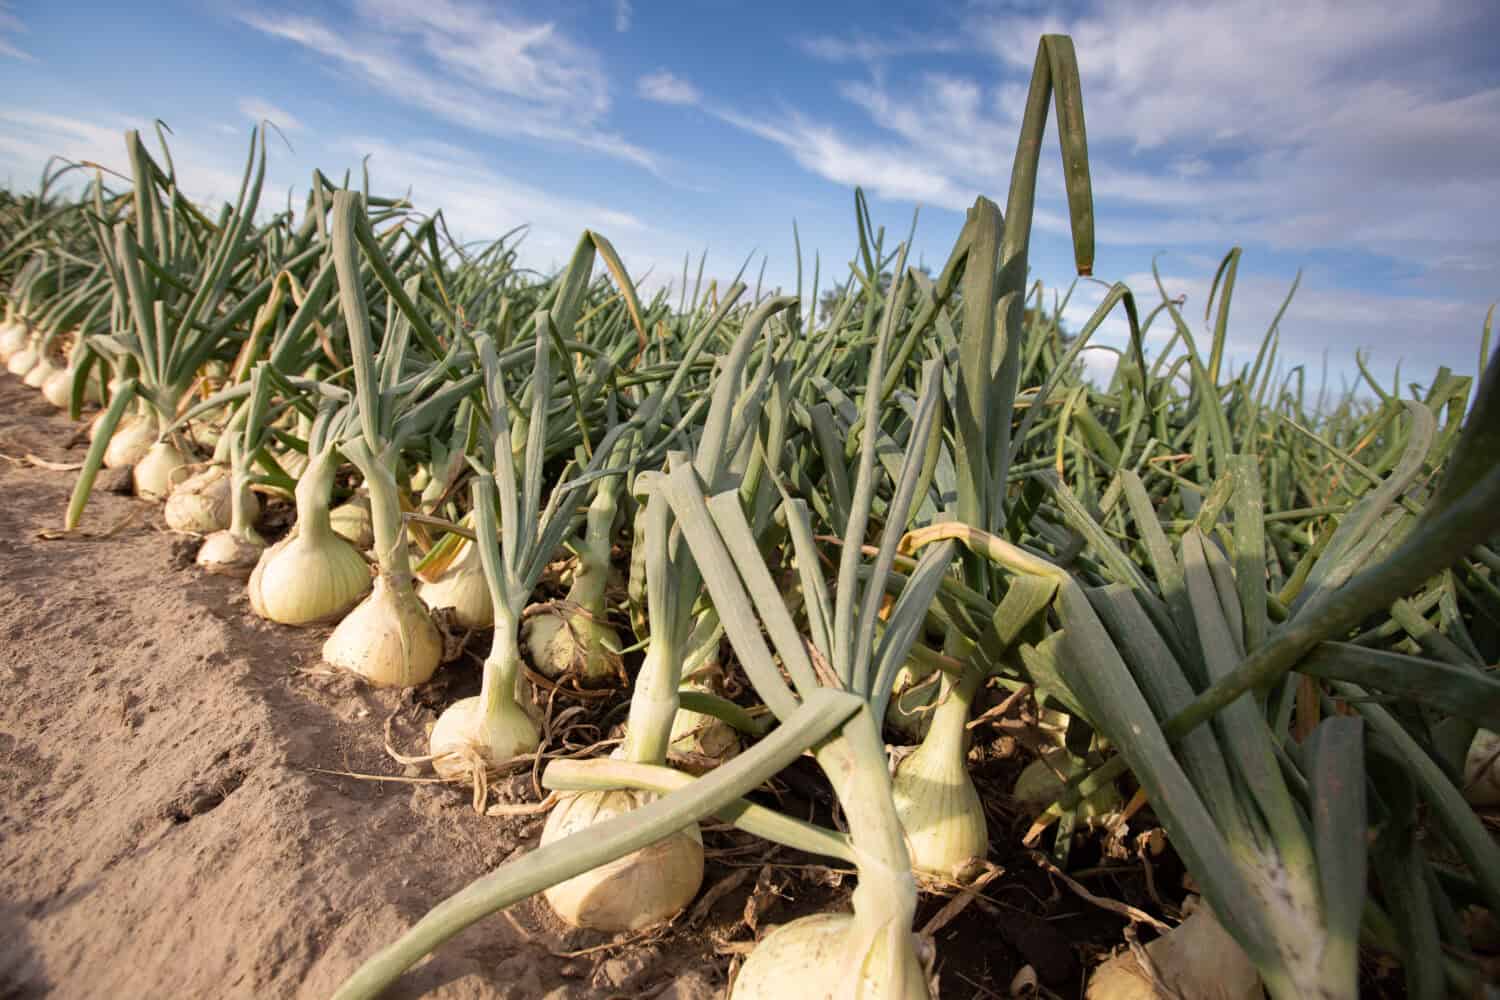 Walla Walla Sweet Onions in the Field